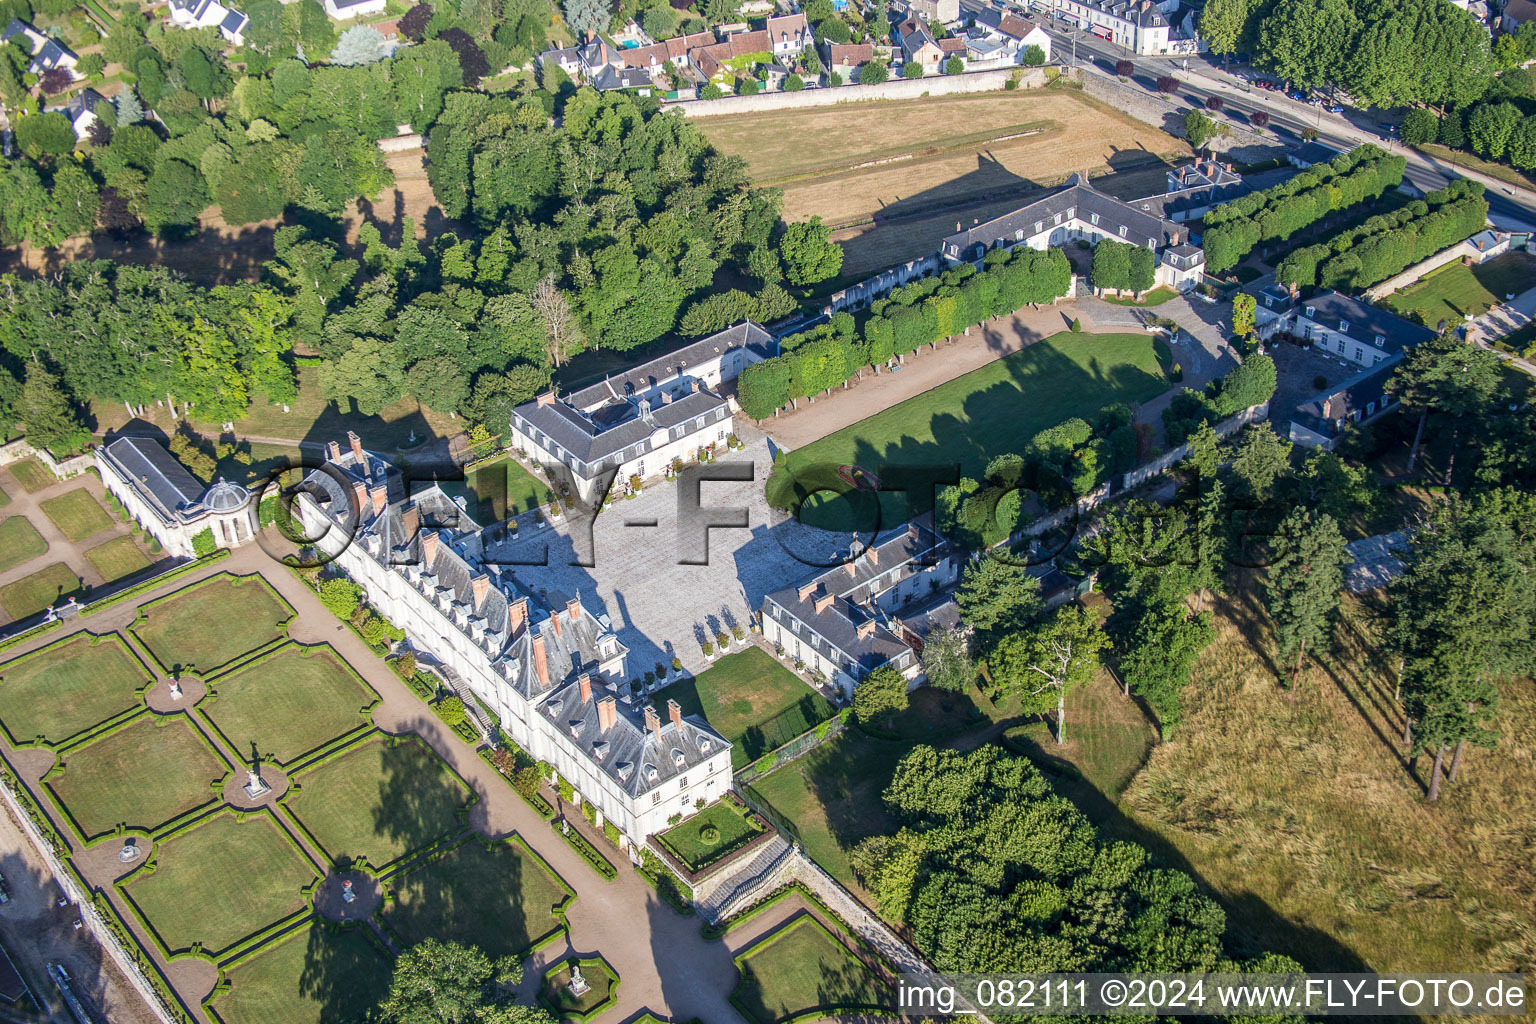 Vue aérienne de Parc du Palais de la Fondation du Palais Pompadour à Menars dans le département Loir et Cher, France